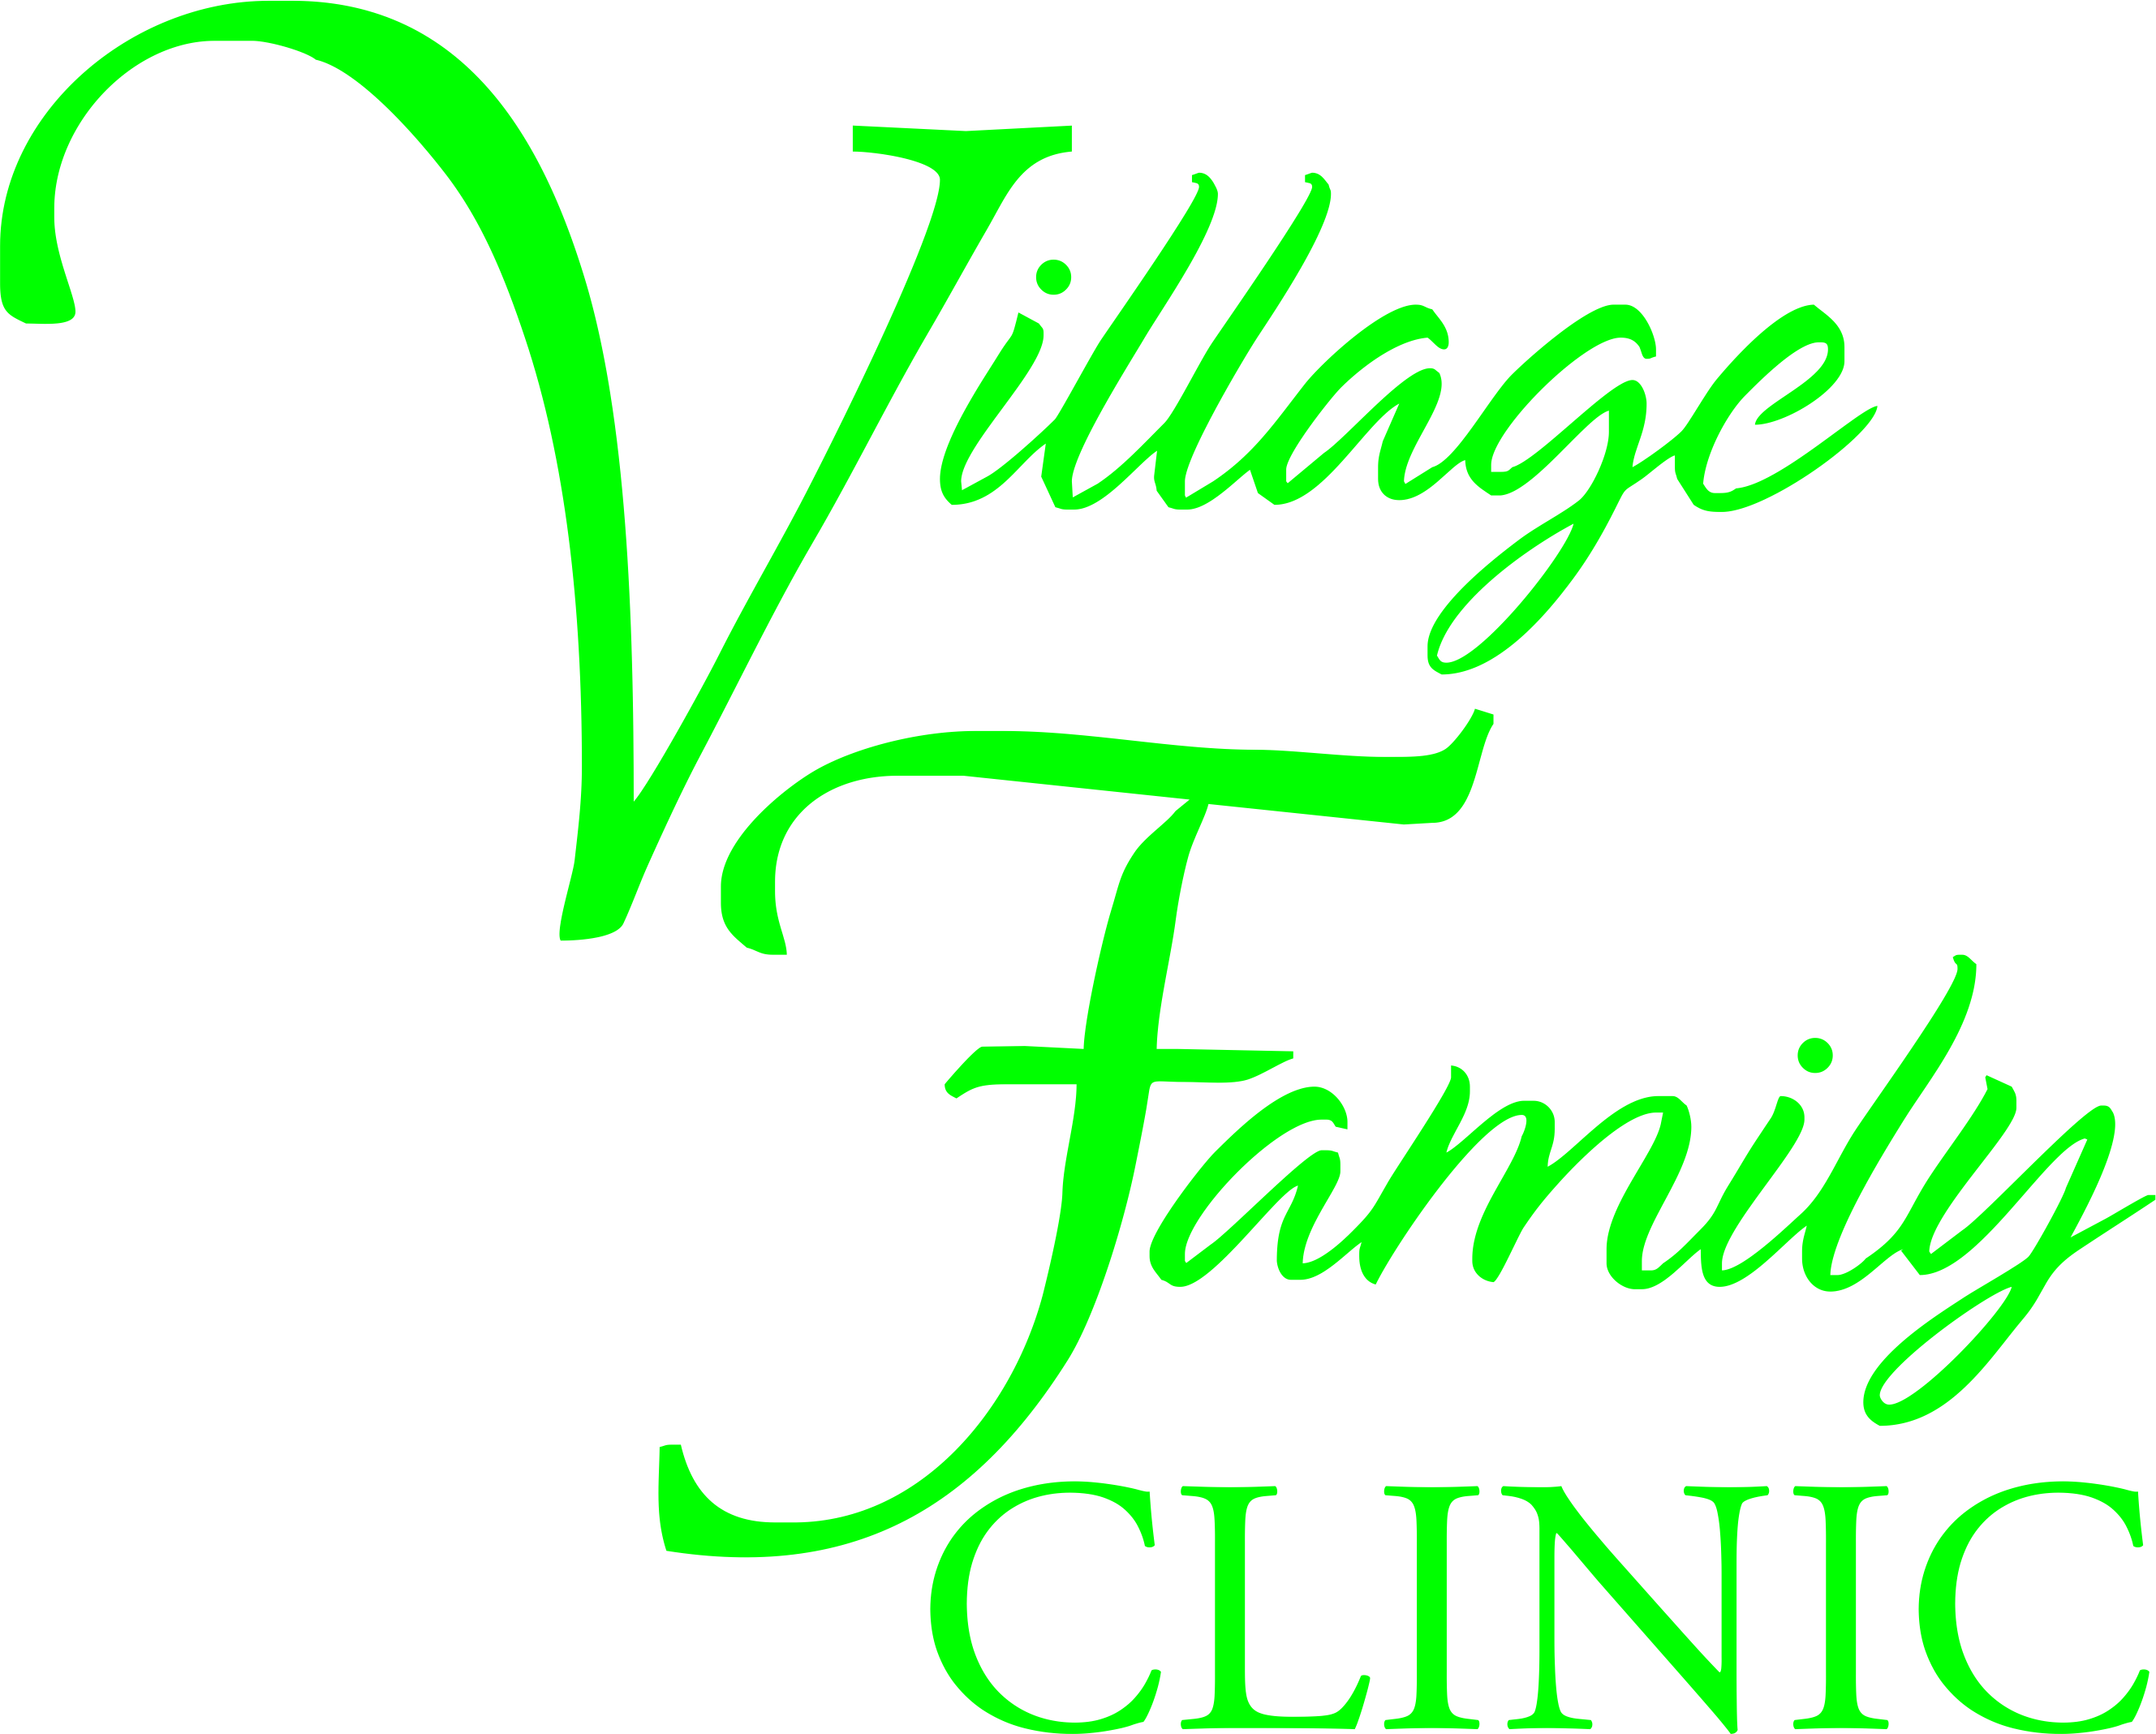 Village Family Clinic logo